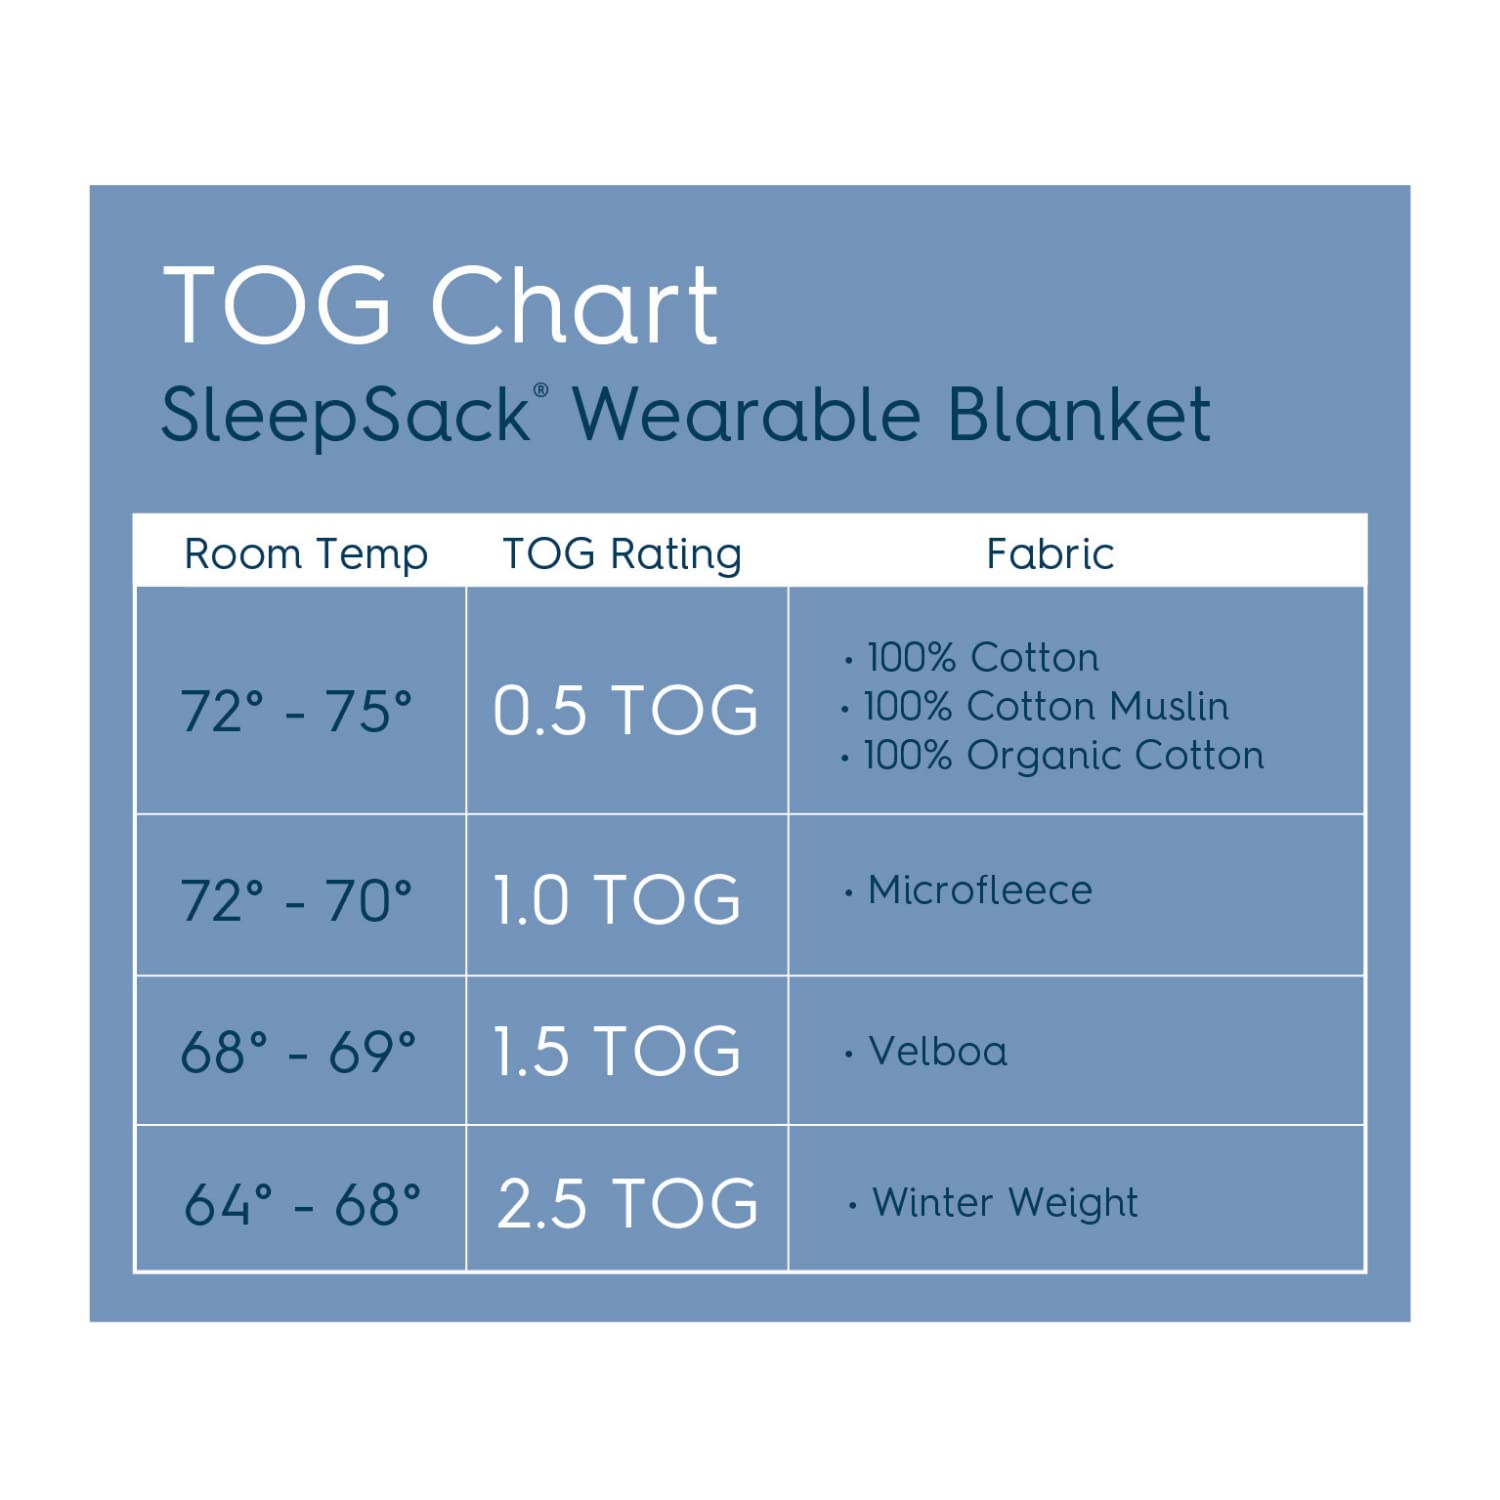 HALO Sleepsack Micro-Fleece Wearable Blanket, TOG 1.0, Cream, X-Large